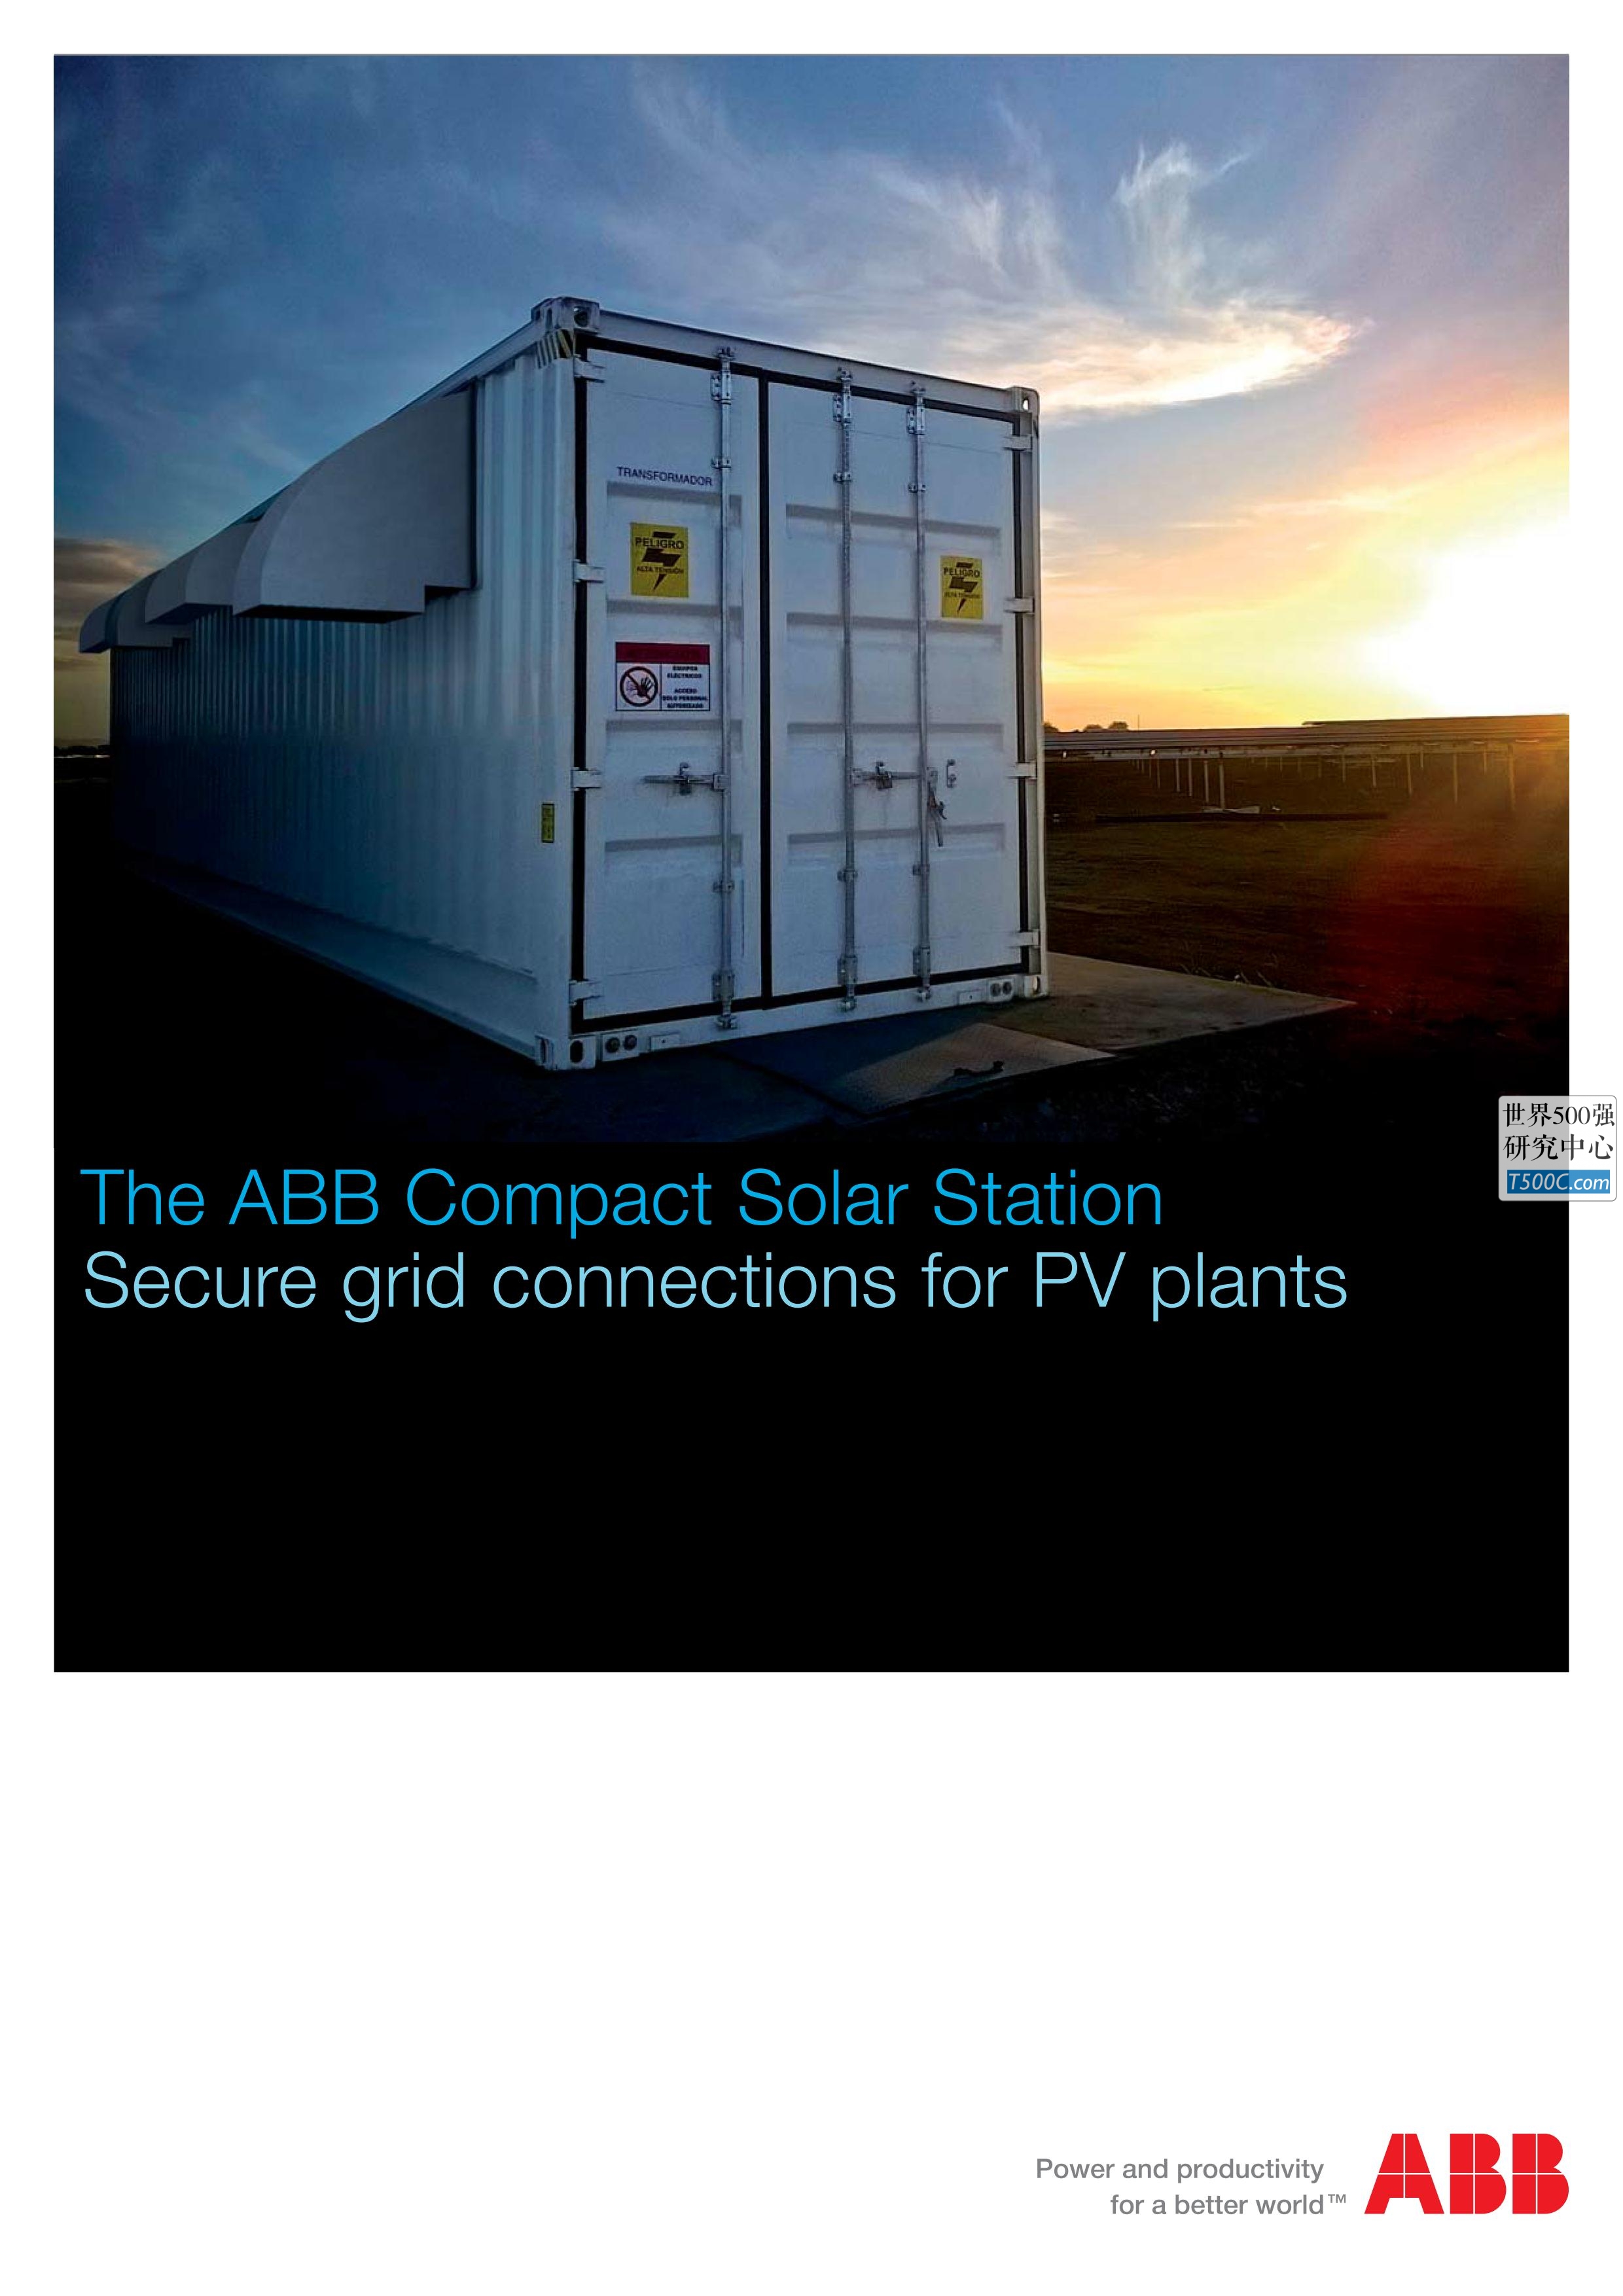 瑞典ABB集团_产品宣传册Brochure_T500C.com_Compact Solar Station.pdf